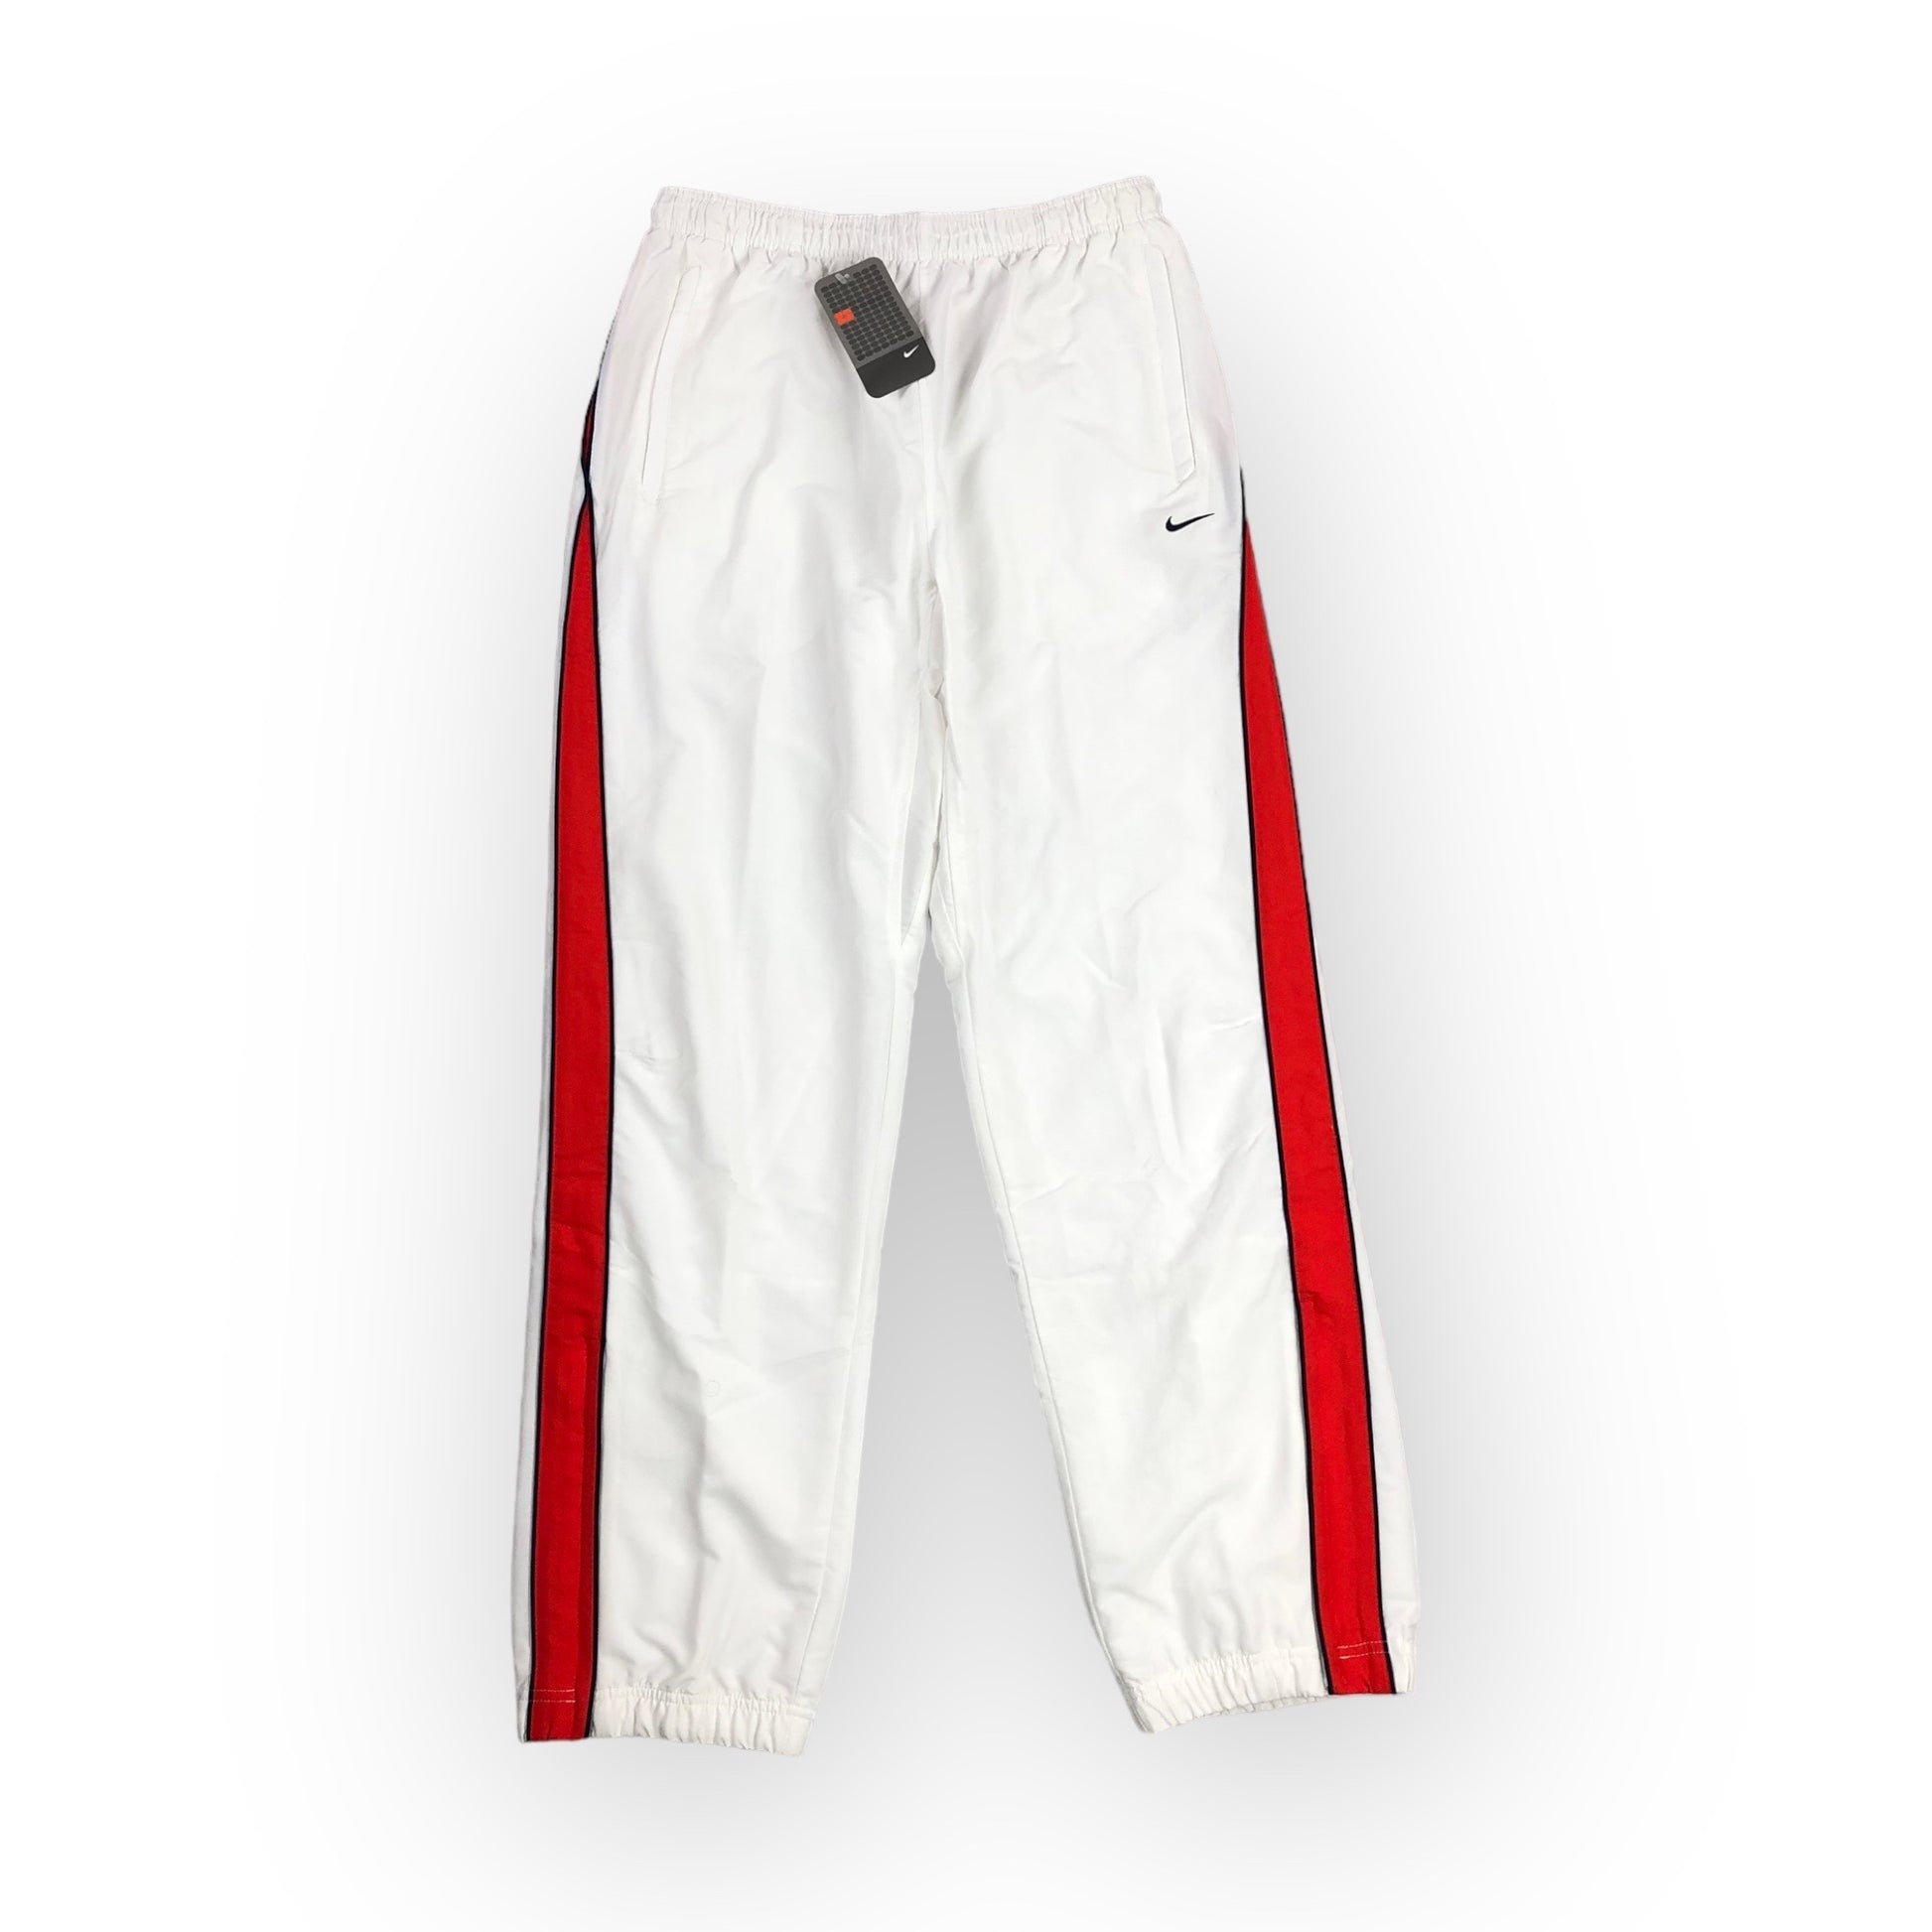 Yeni Nike Vintage Track Pants'lar şimdi satışta kolayca sitemizden sipariş  oluşturabilirsiniz.